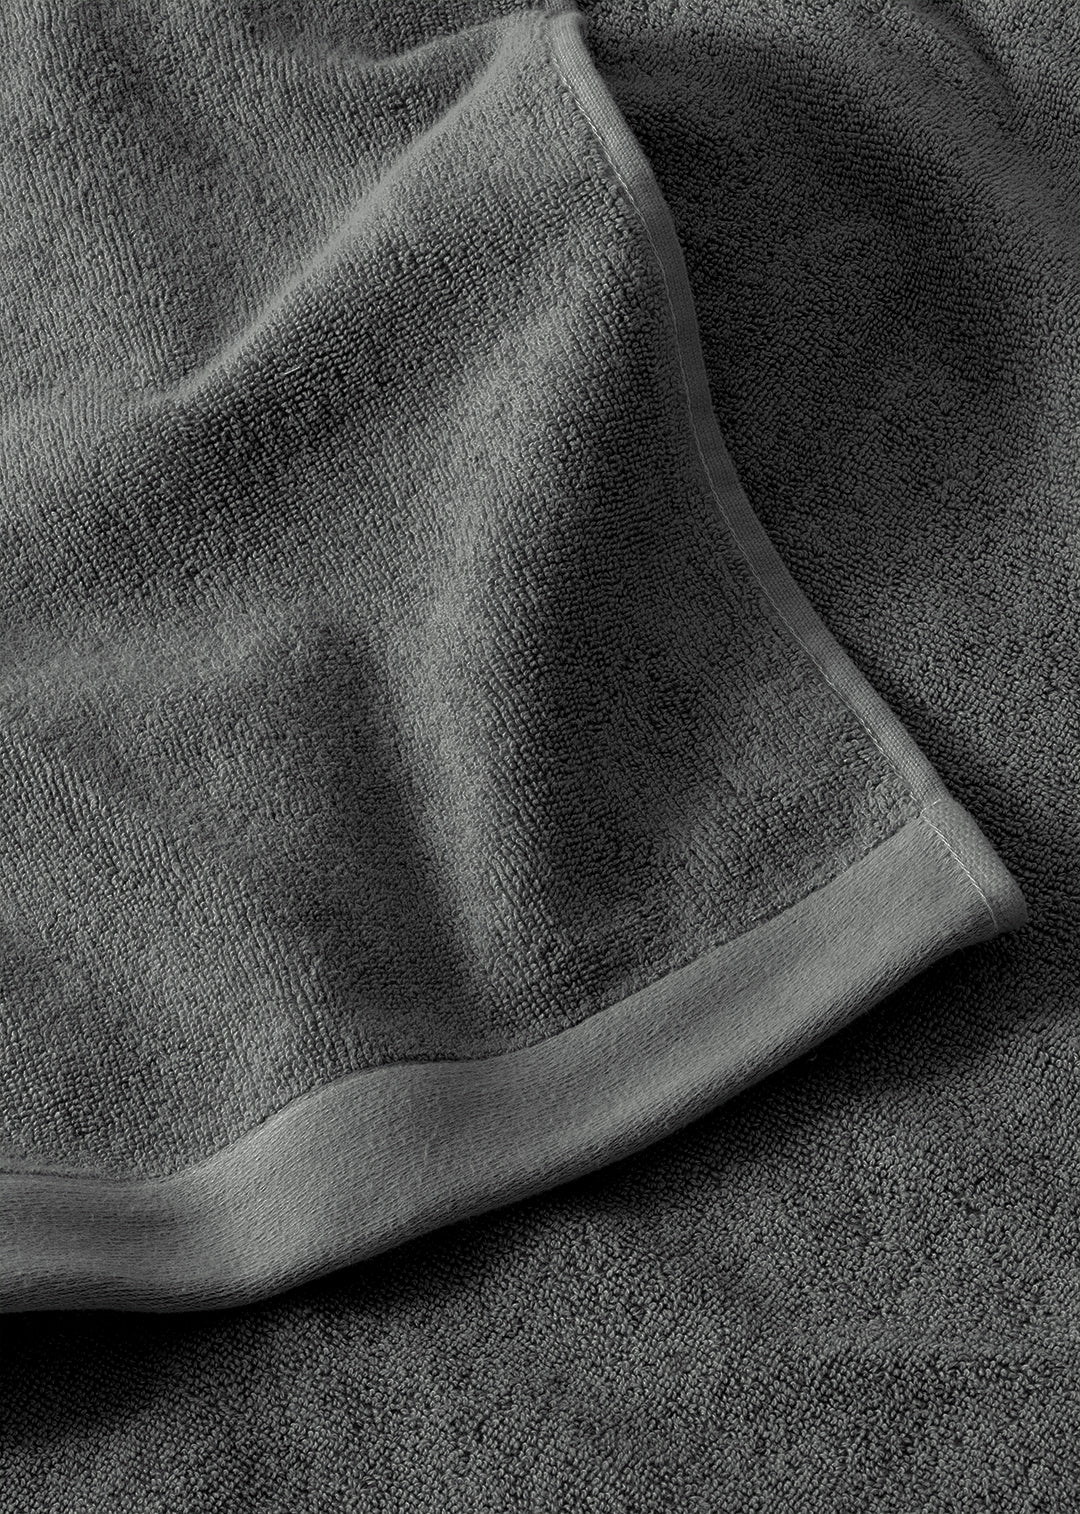 Handtuch Baumwolle Anthrazit 100 x 150 cm